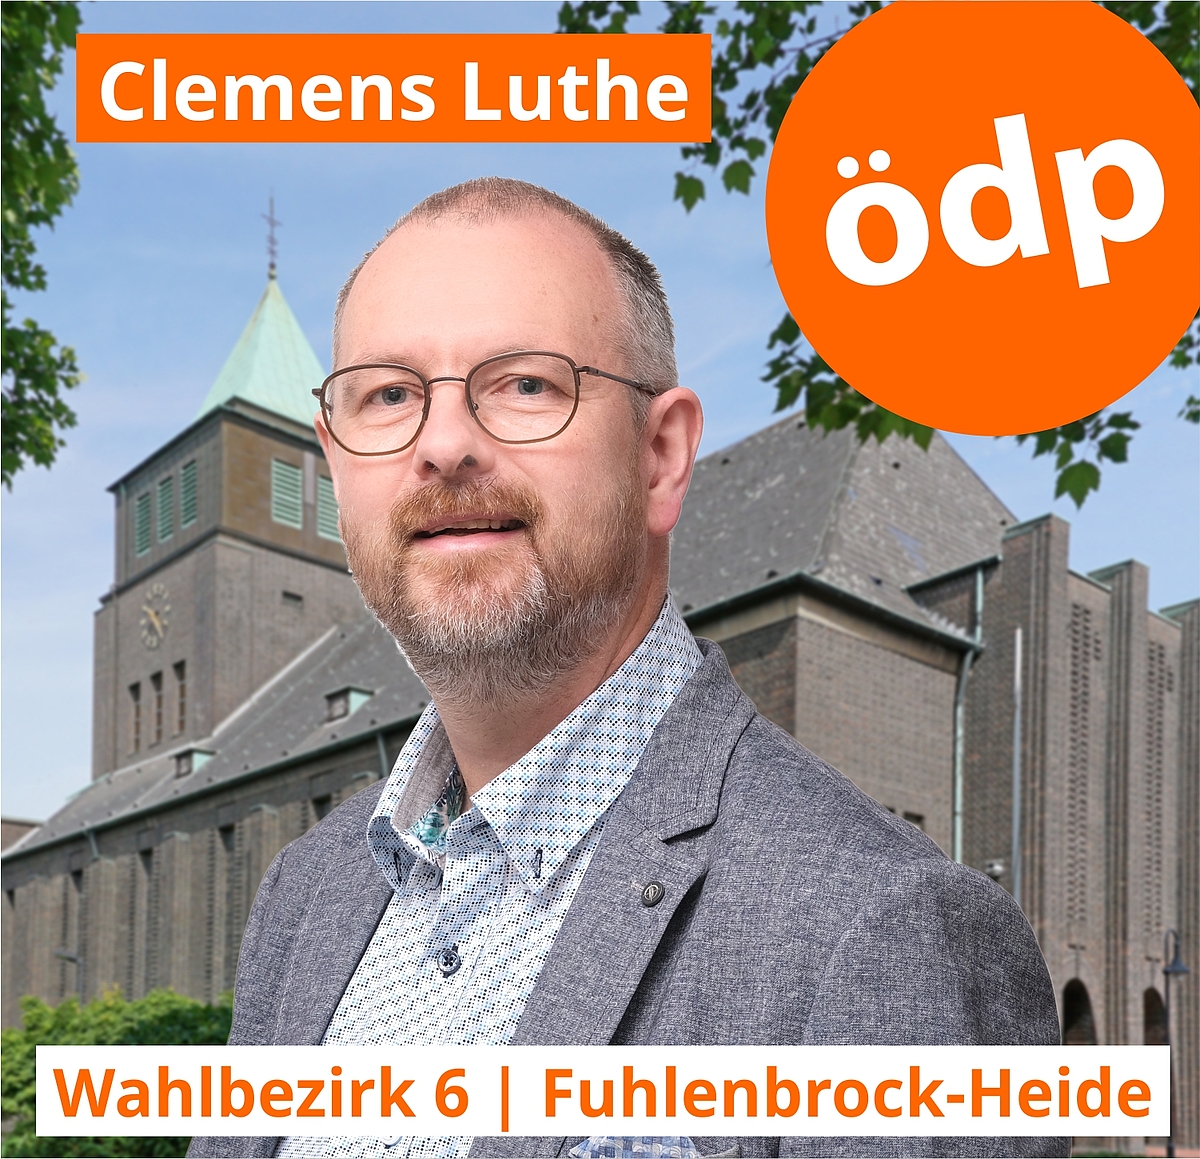 Clemens Luthe | Wahlbezirk 6 | Fuhlenbrock-Heide